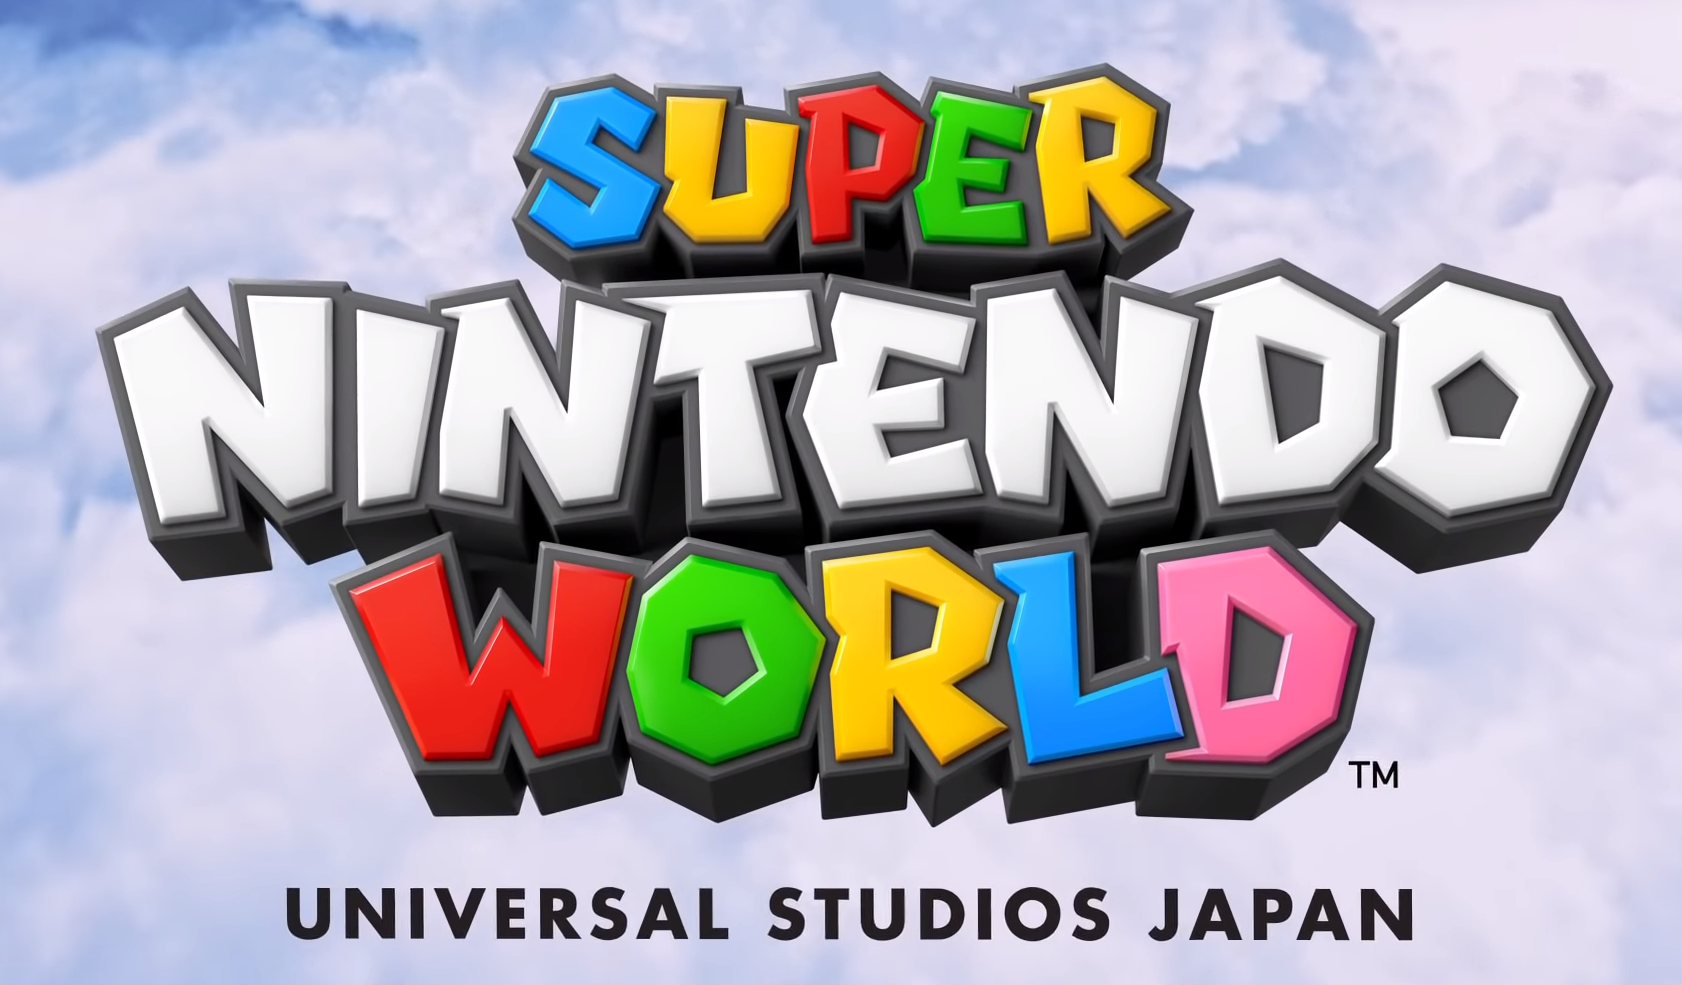 任天堂马里奥入驻日本环球影城 新区域超级任天堂世界